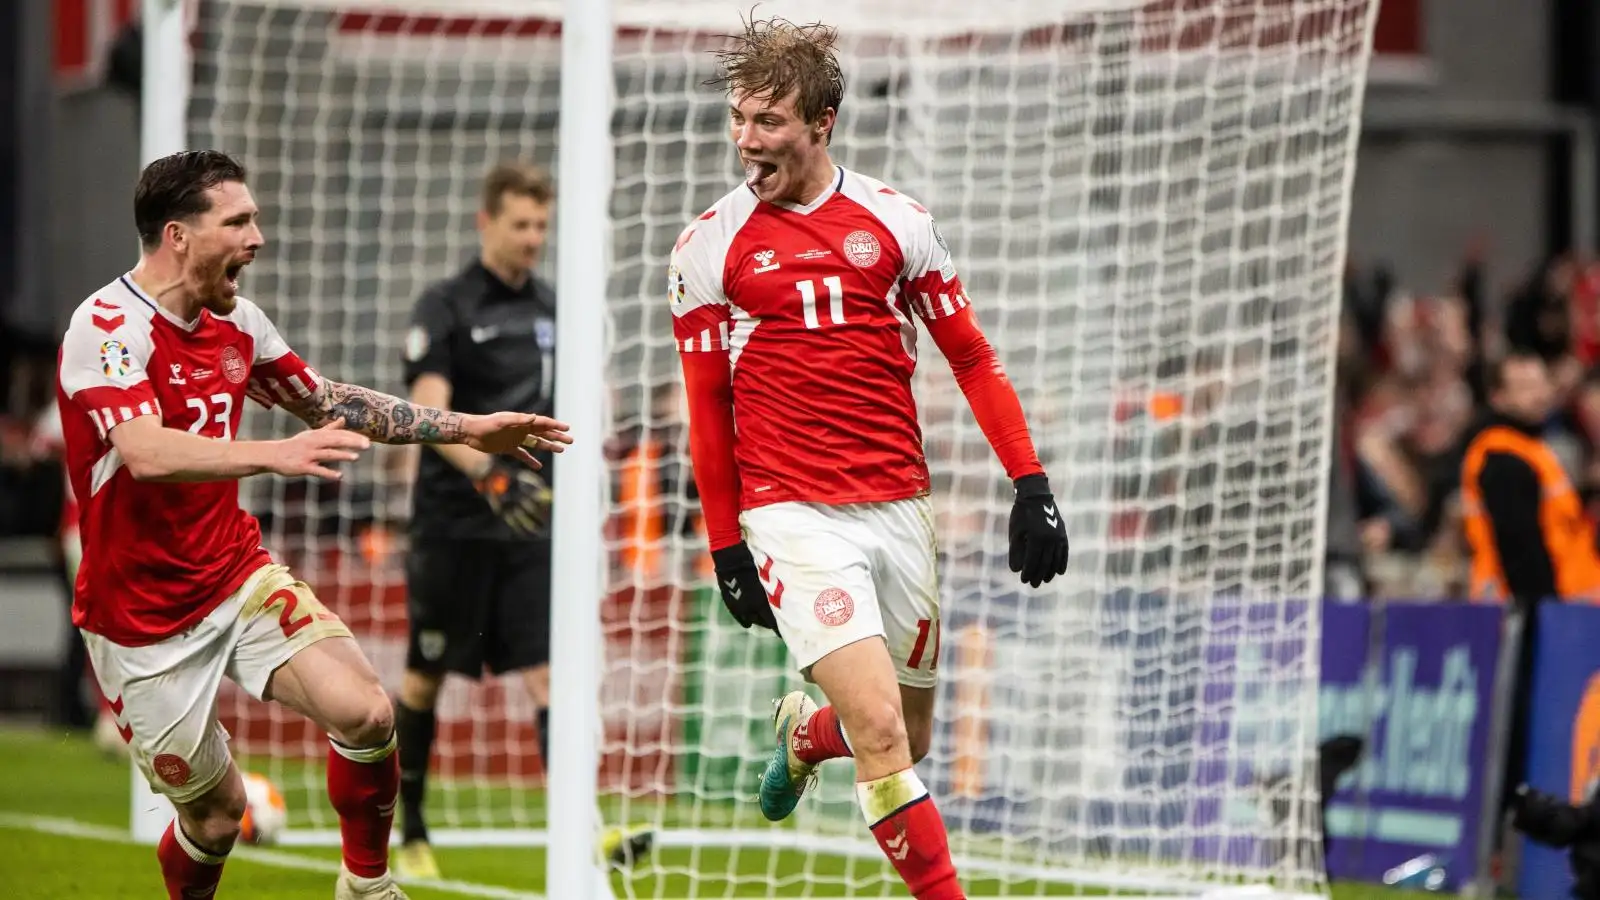 Man Utd target Rasmus Hojlund celebrates scoring a goal